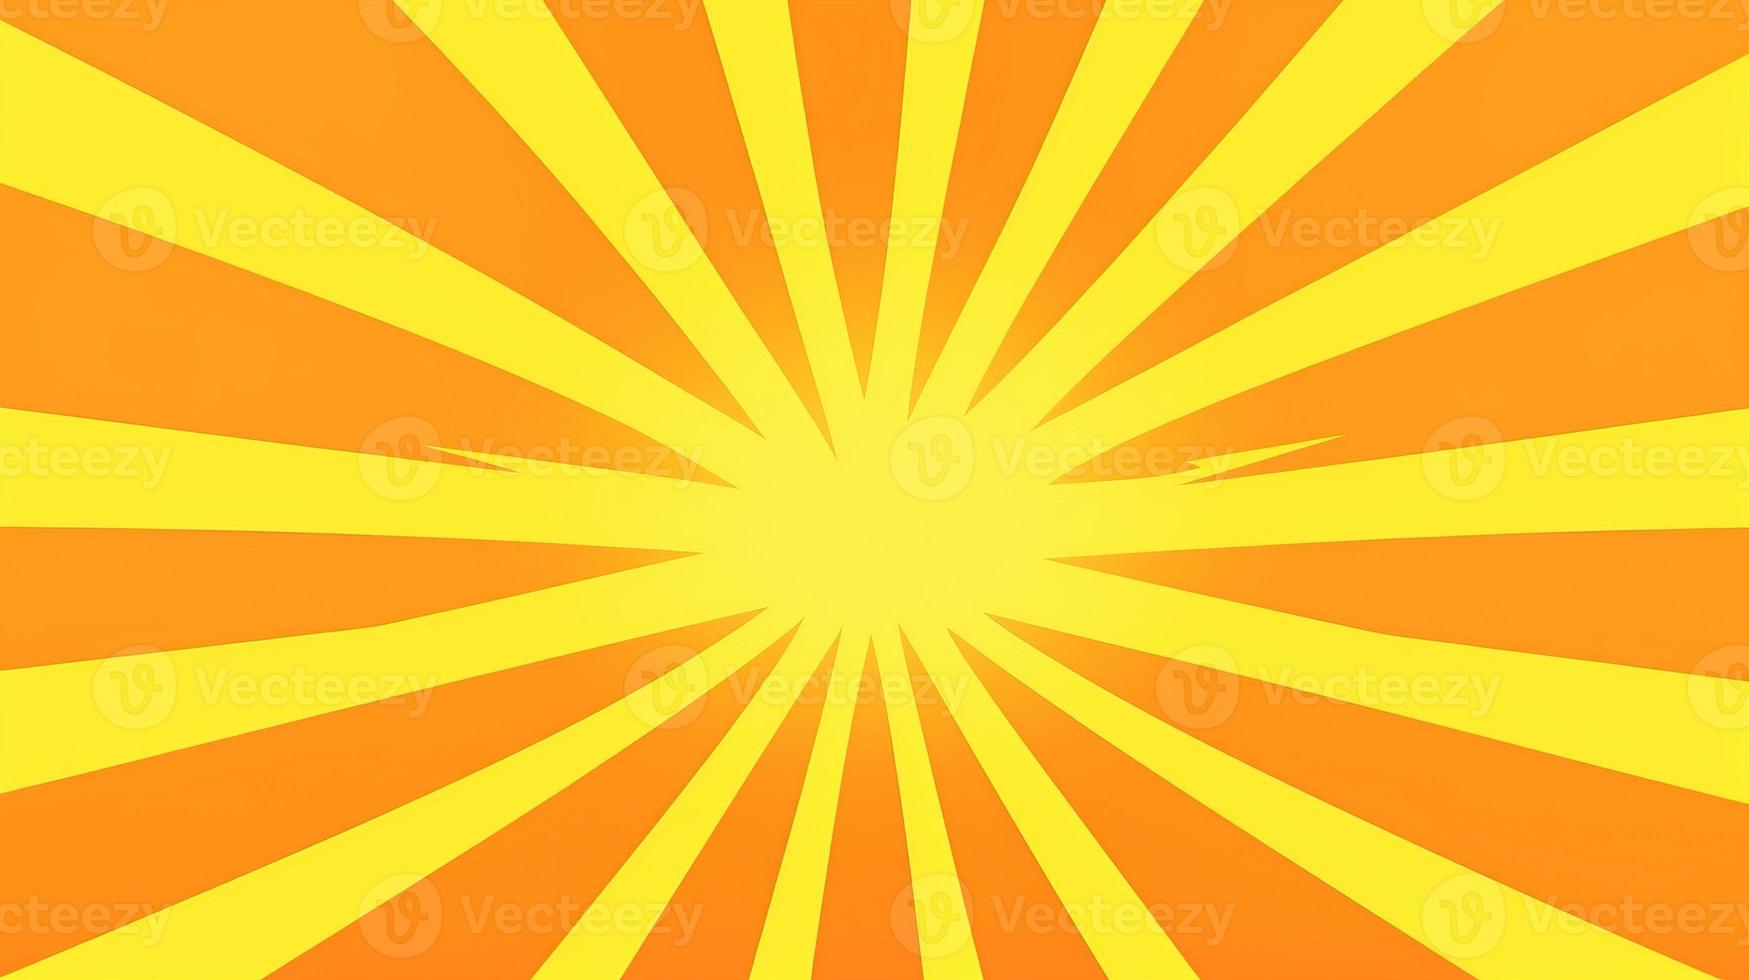 amarillo y naranja rayos de sol antecedentes foto